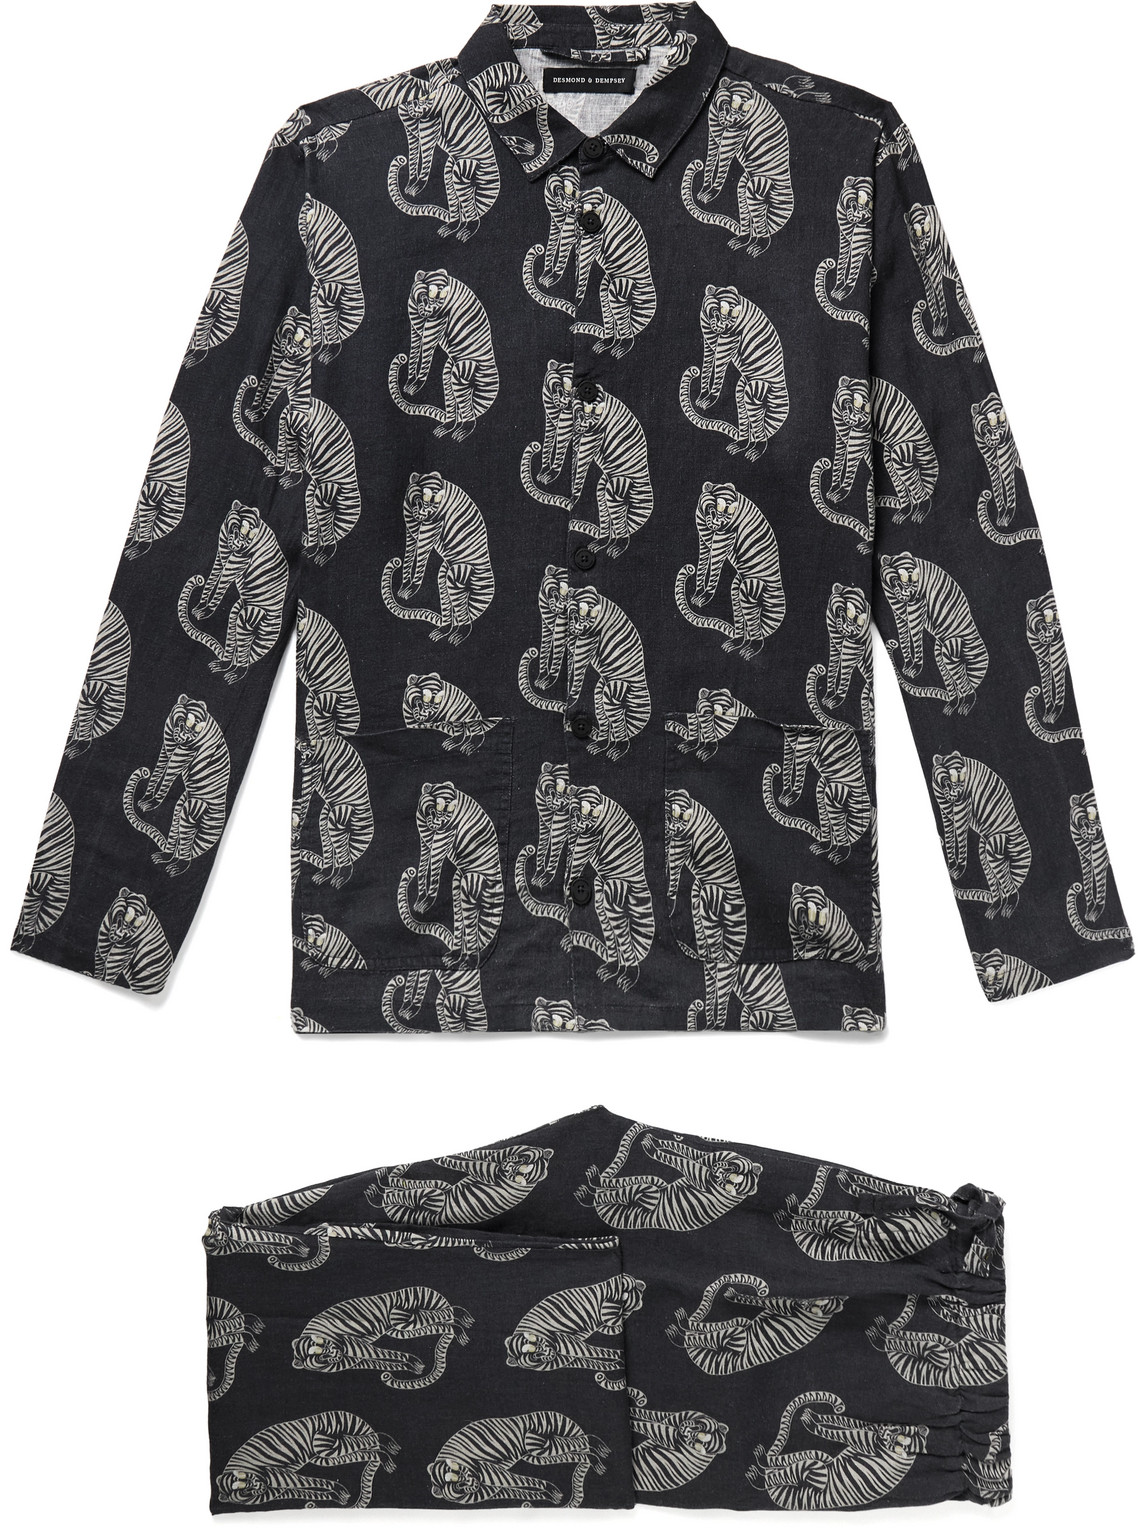 Desmond & Dempsey - Printed Linen Pyjama Set - Men - Black - S von Desmond & Dempsey